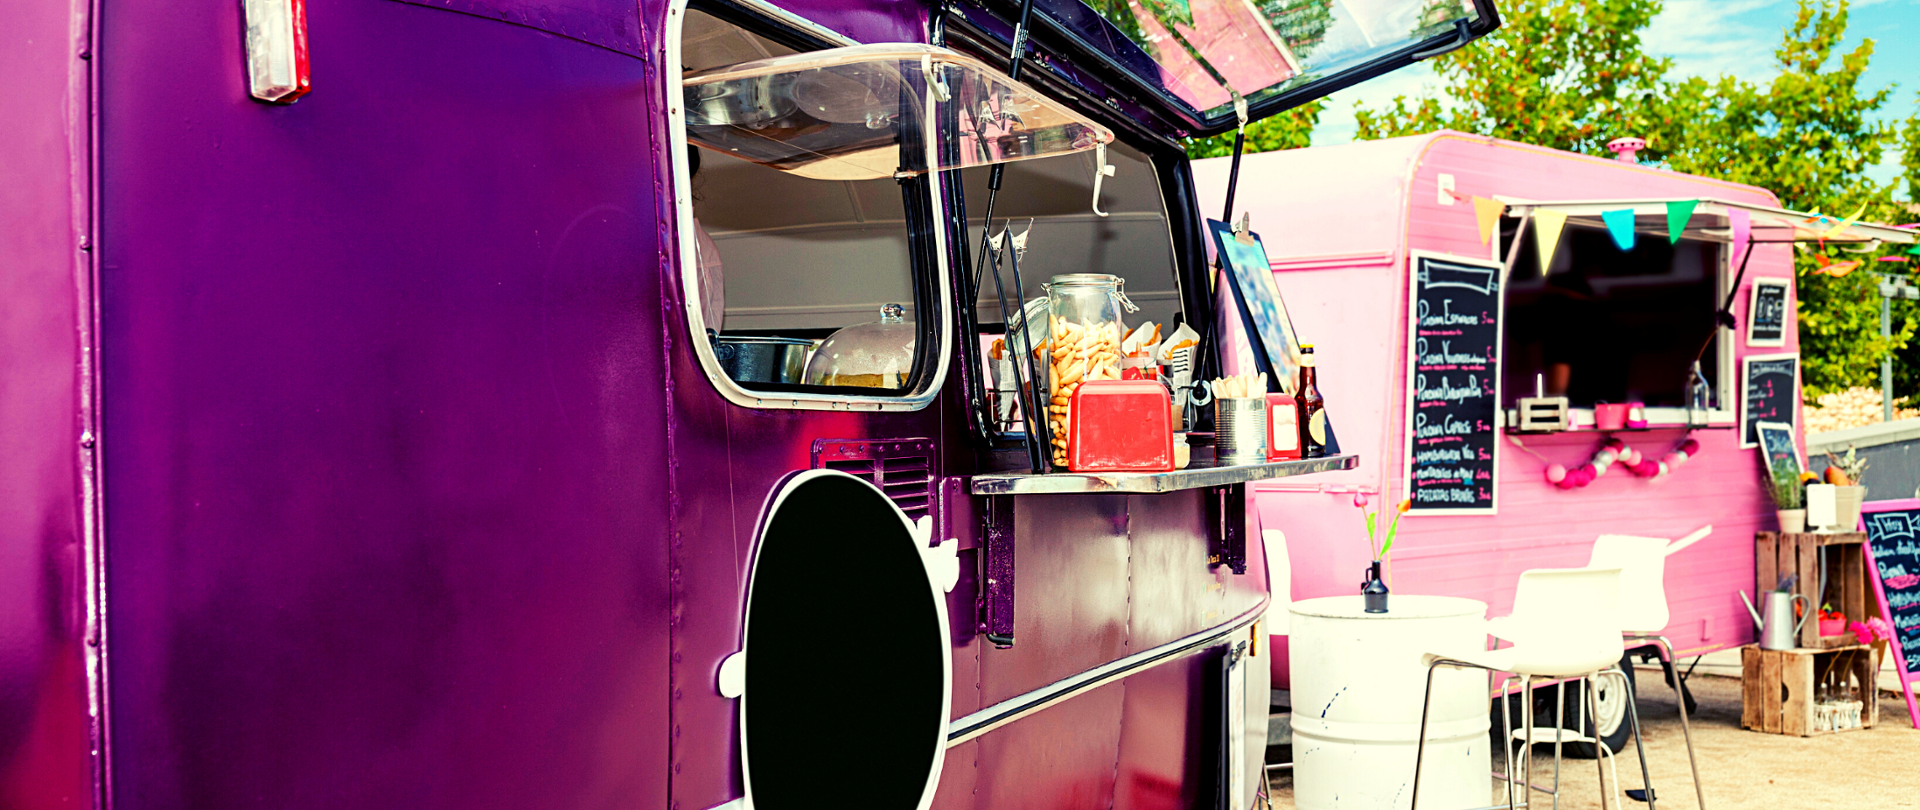 Dwa food trucki - przyczepy, z których serwowane jest jedzenie. Jedna przyczepa (po lewej) - fioletowa, druga (po prawej) - różowa. Widoczne stojące na blatach przystawki i napoje. Przed przyczepami krzesła.